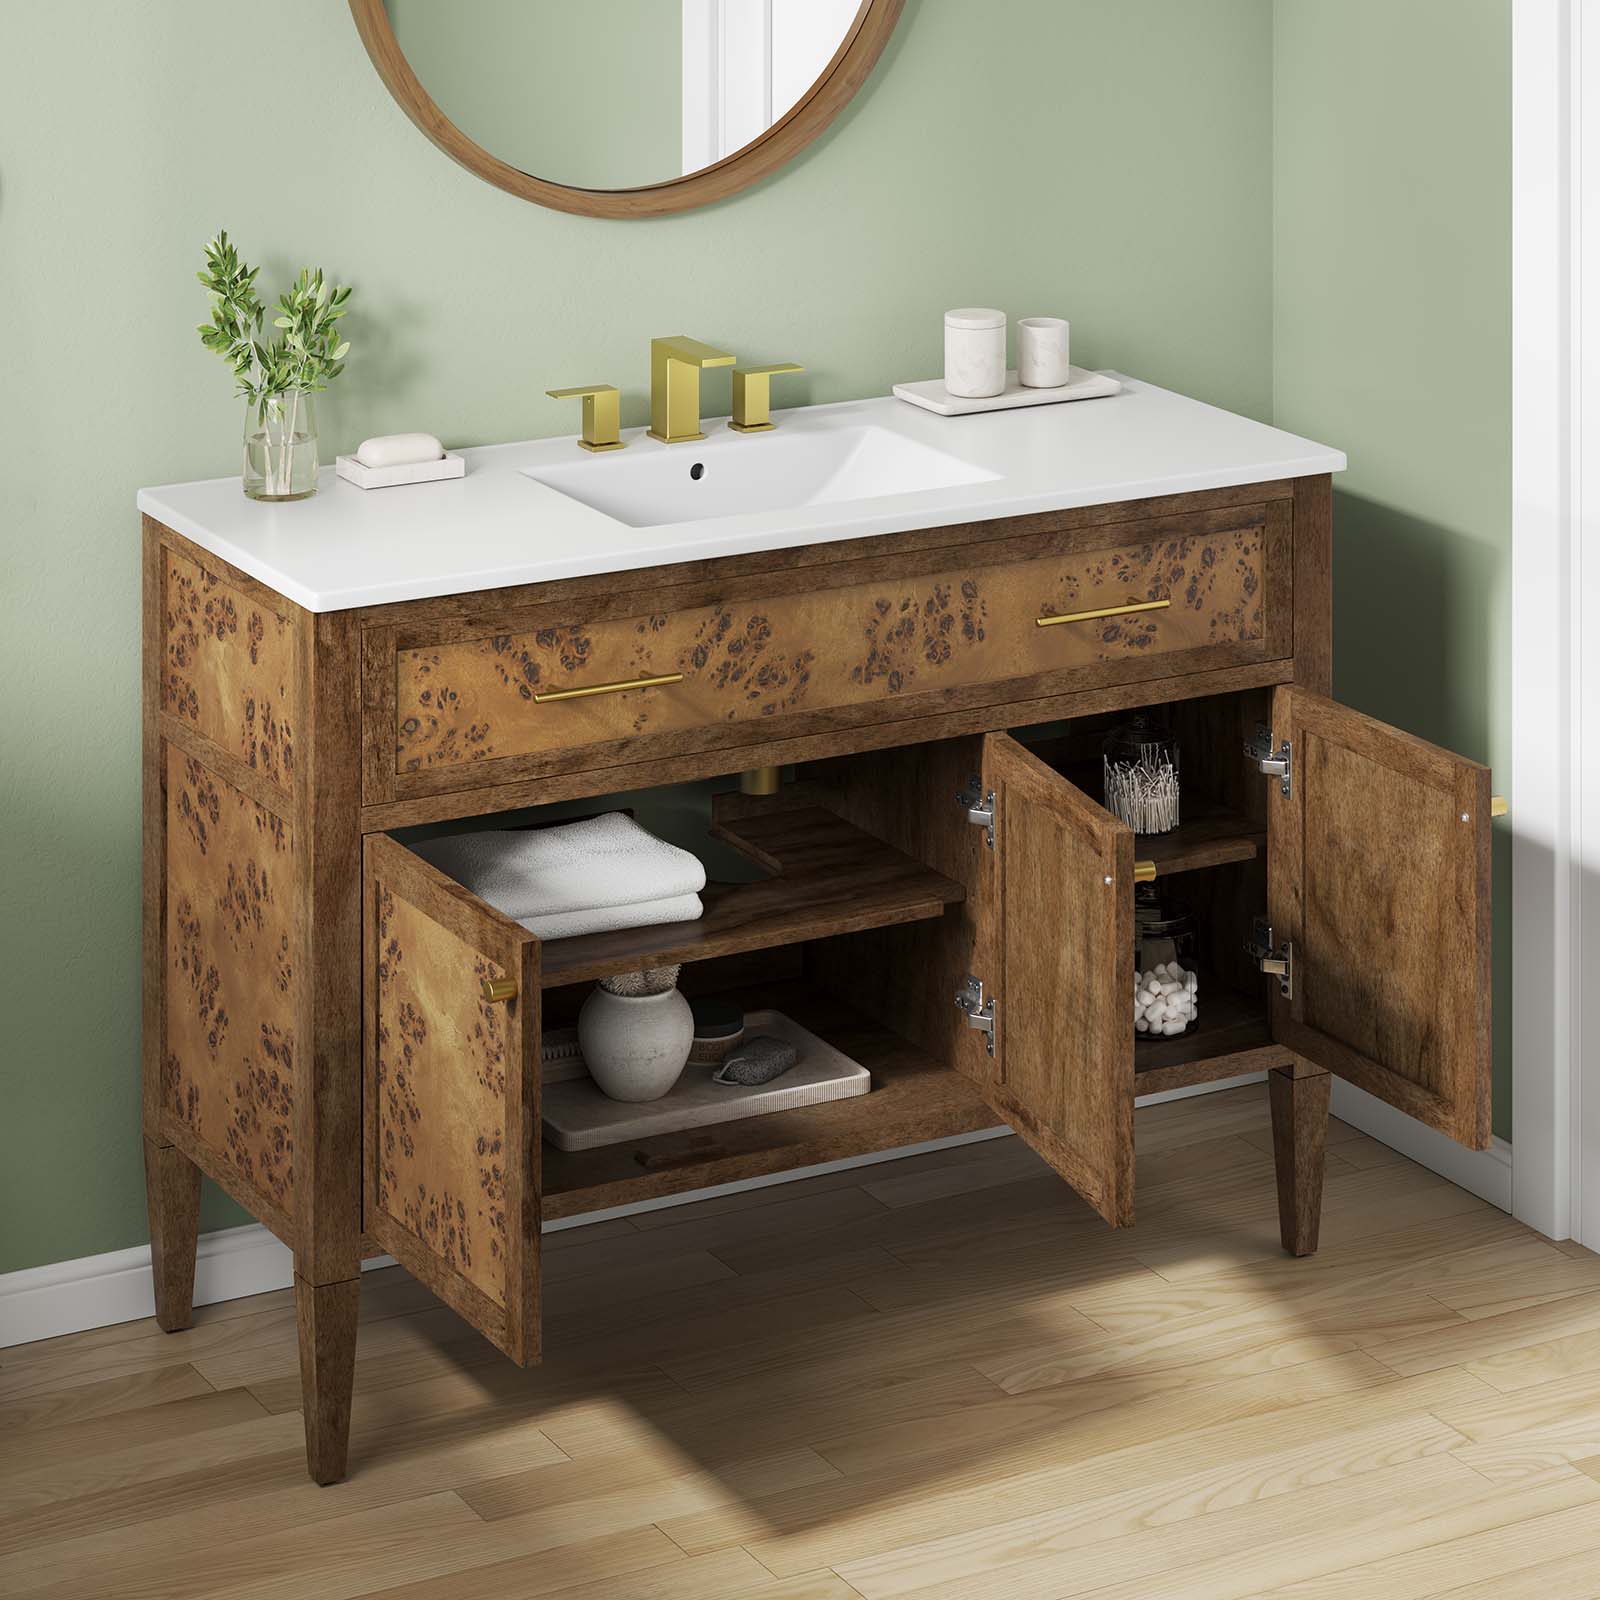 One - Elysian 48" Wood Single Sink Bathroom Vanity